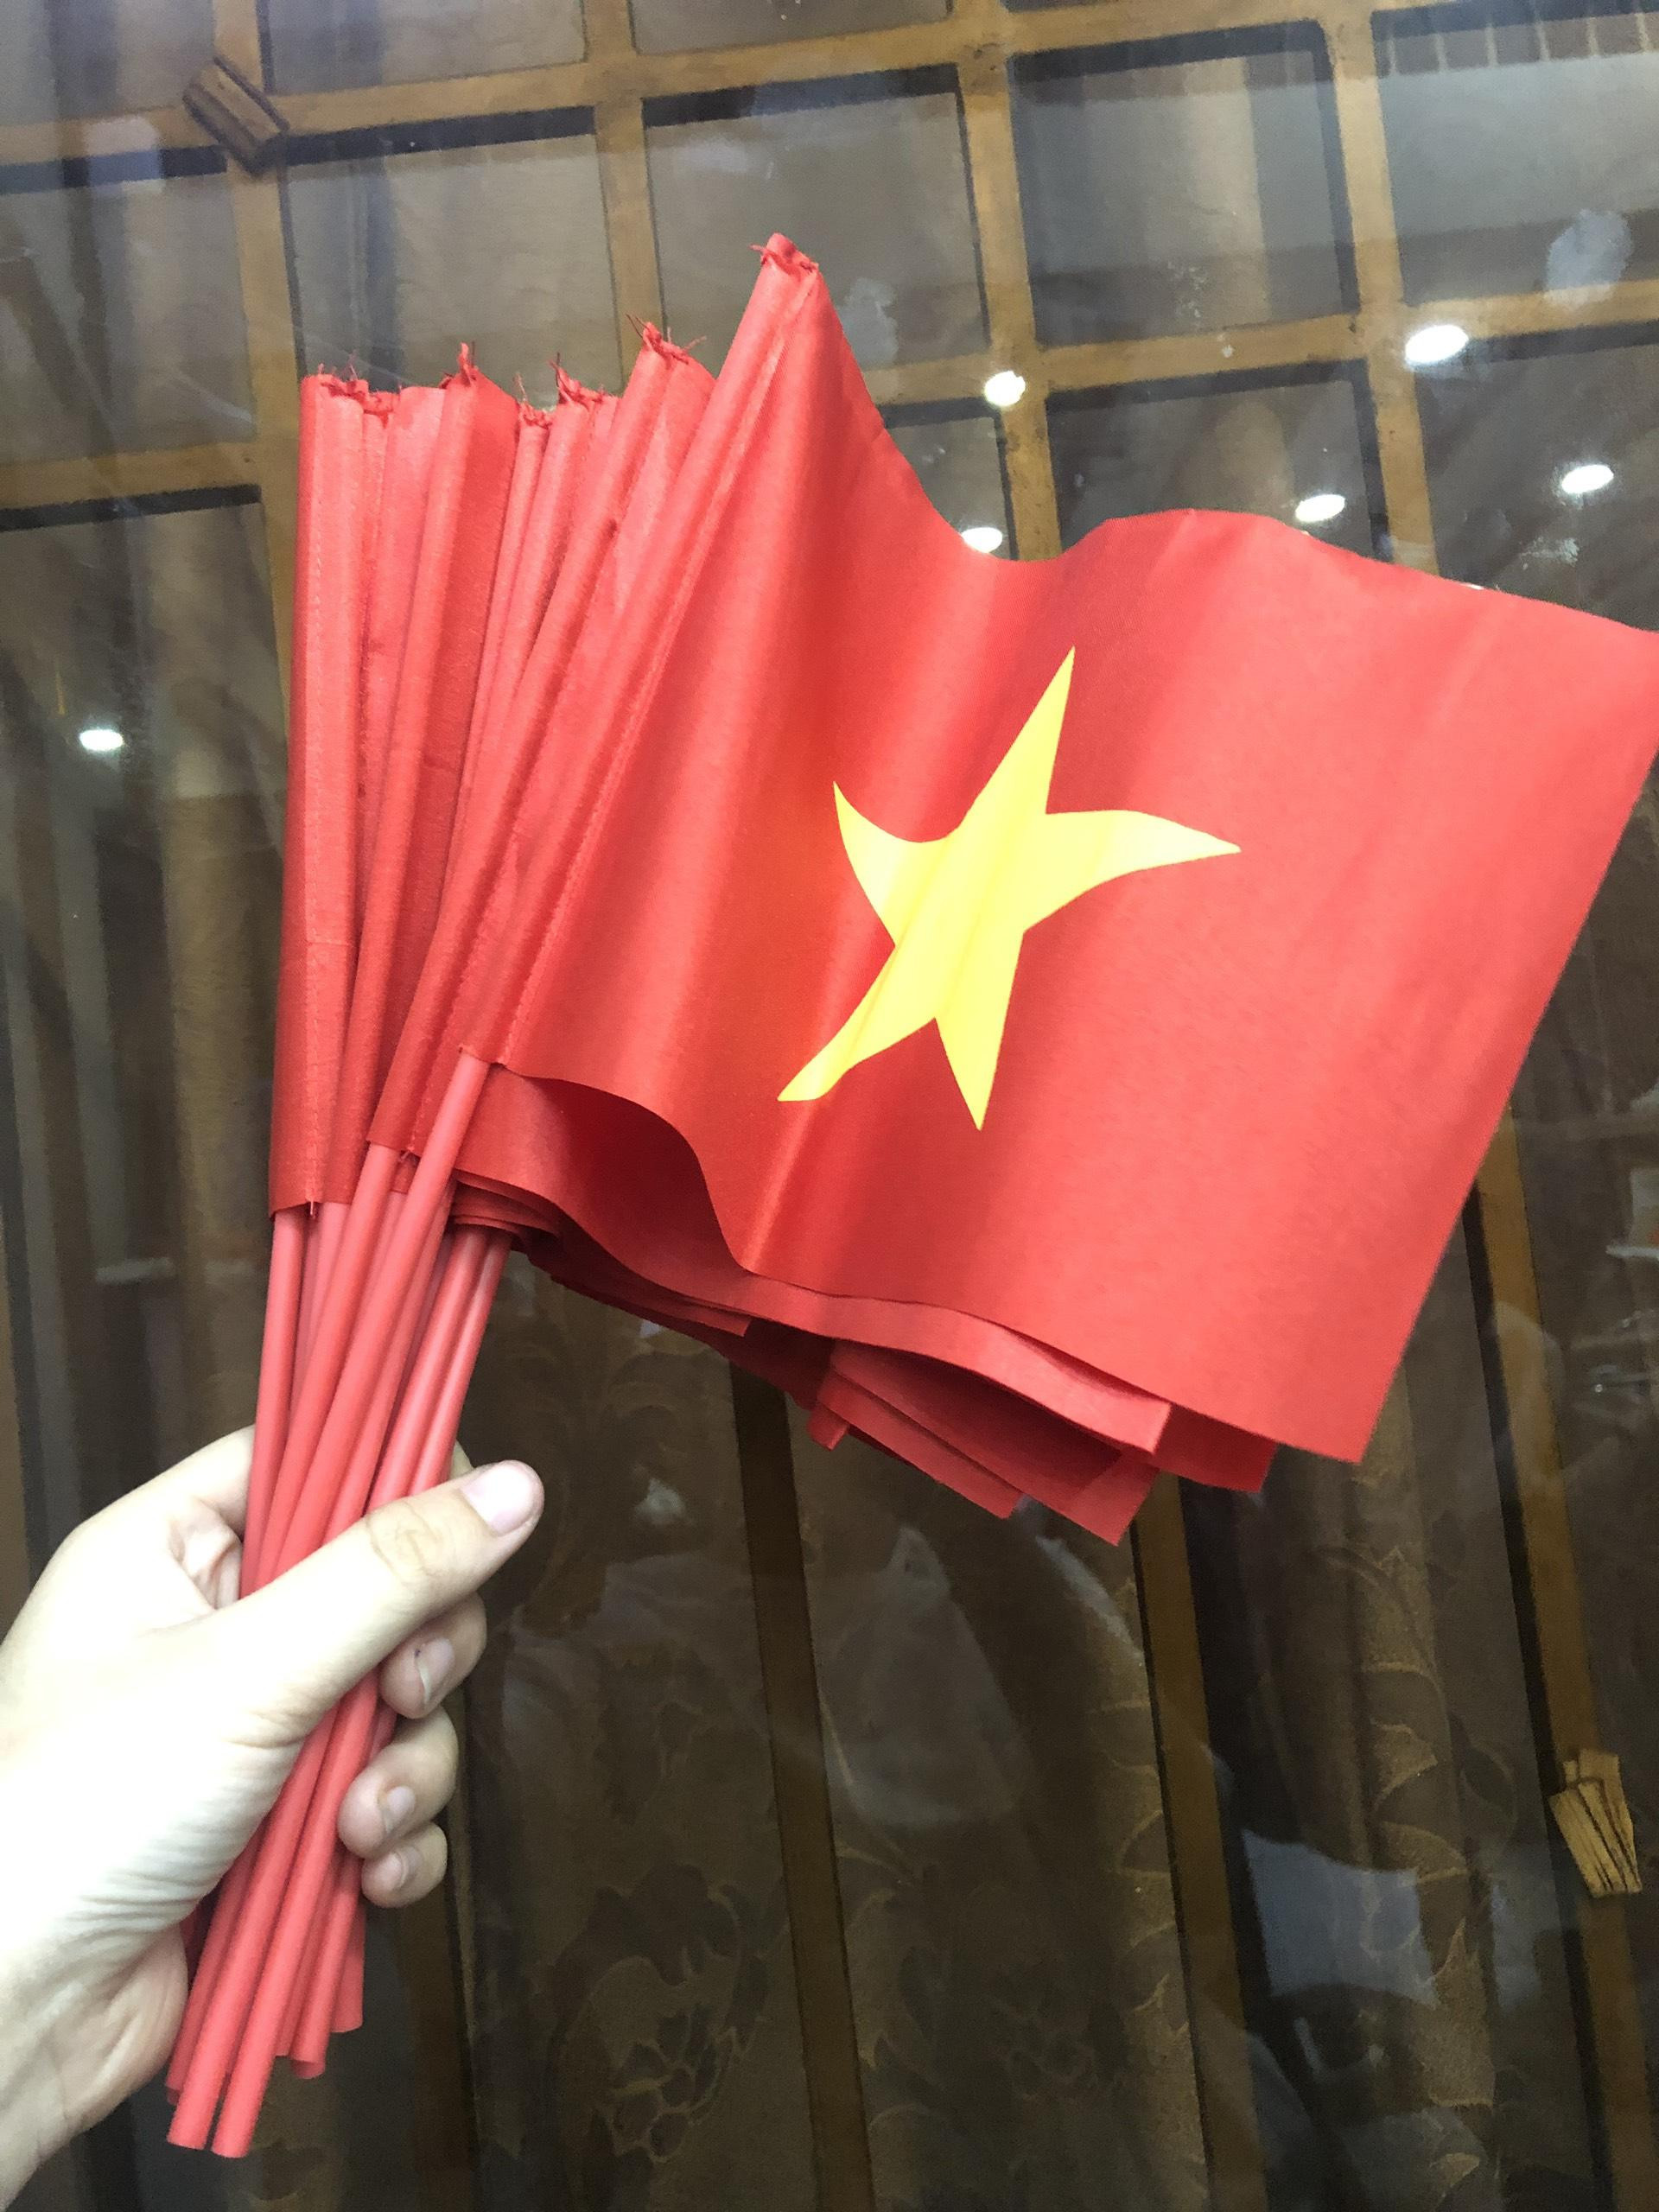 Cùng với sự phát triển của du lịch trong tương lai, cờ Việt Nam cầm tay sẽ trở thành biểu tượng được sử dụng nhiều trong quảng bá hình ảnh đất nước. Khách du lịch đến Việt Nam sẽ có cơ hội cầm trên tay chiếc cờ Việt Nam để chụp ảnh kỷ niệm và lưu giữ những khoảnh khắc đáng nhớ.